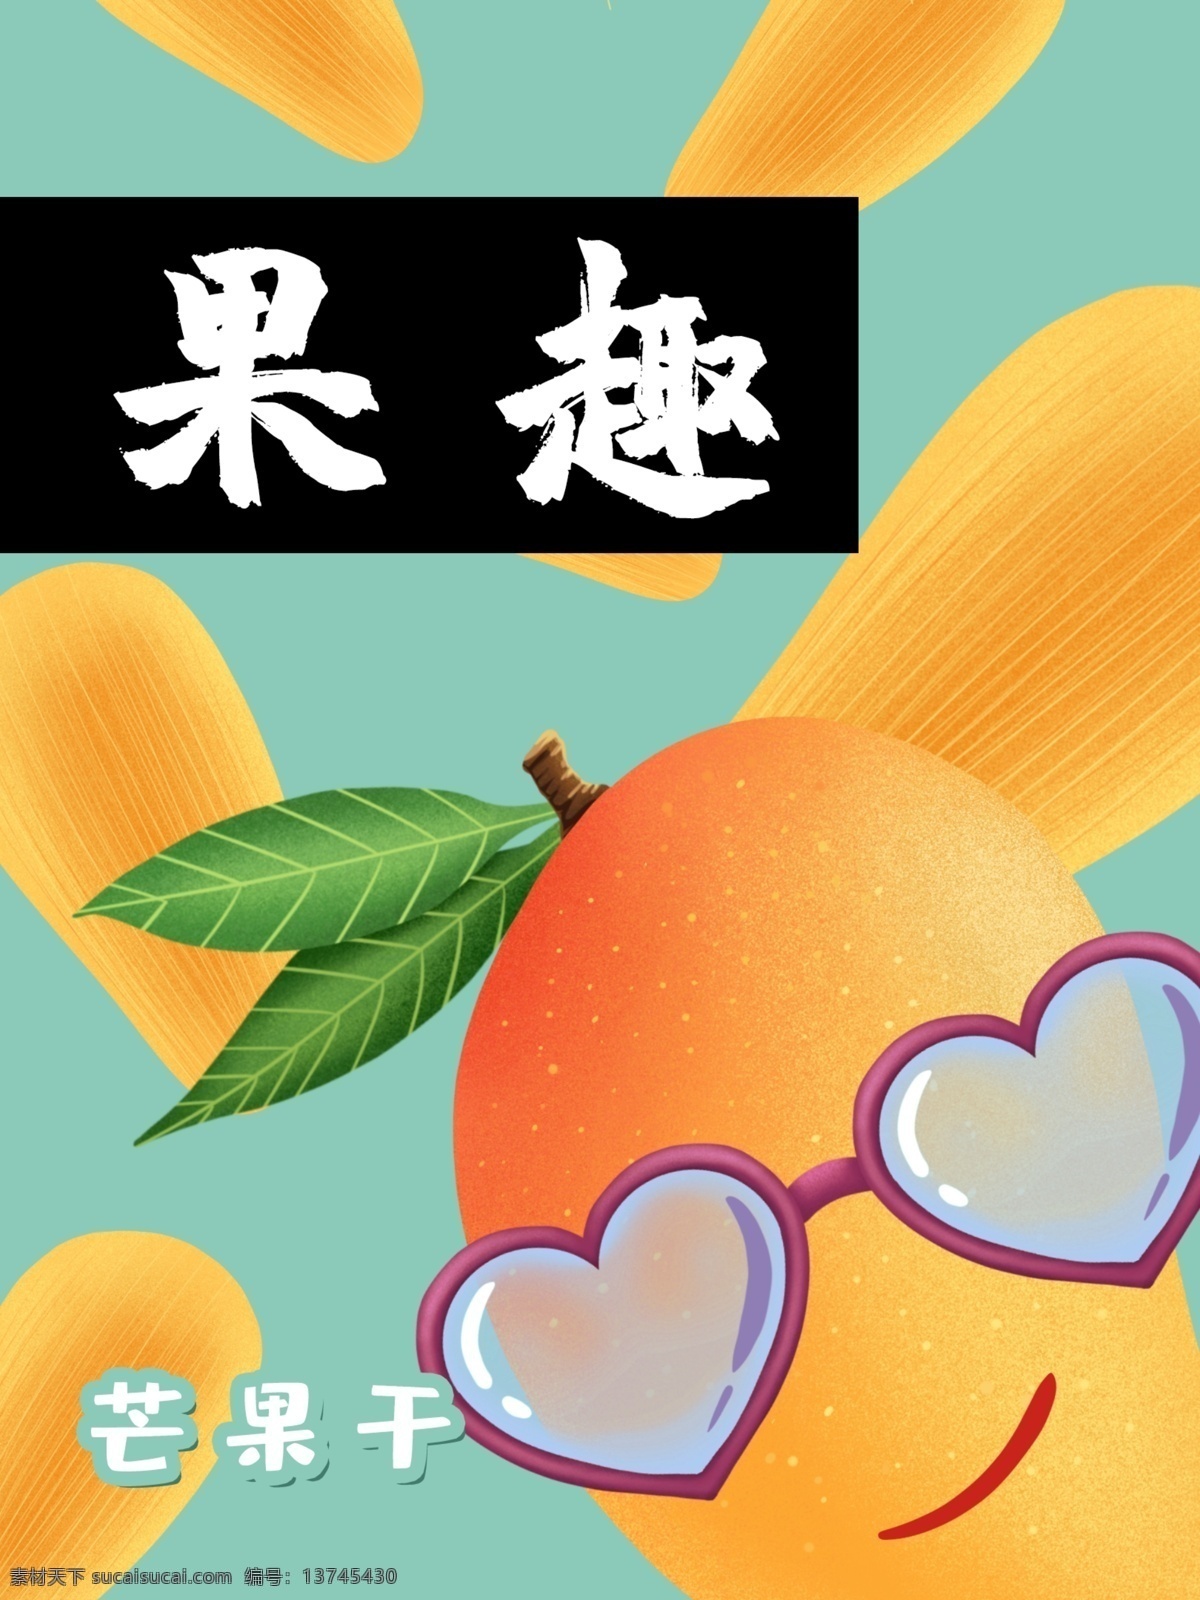 芒果 干 包装 炫 酷 芒果干包装 果干包装 零食包装 食品包装 果干 零食 插画 卡通